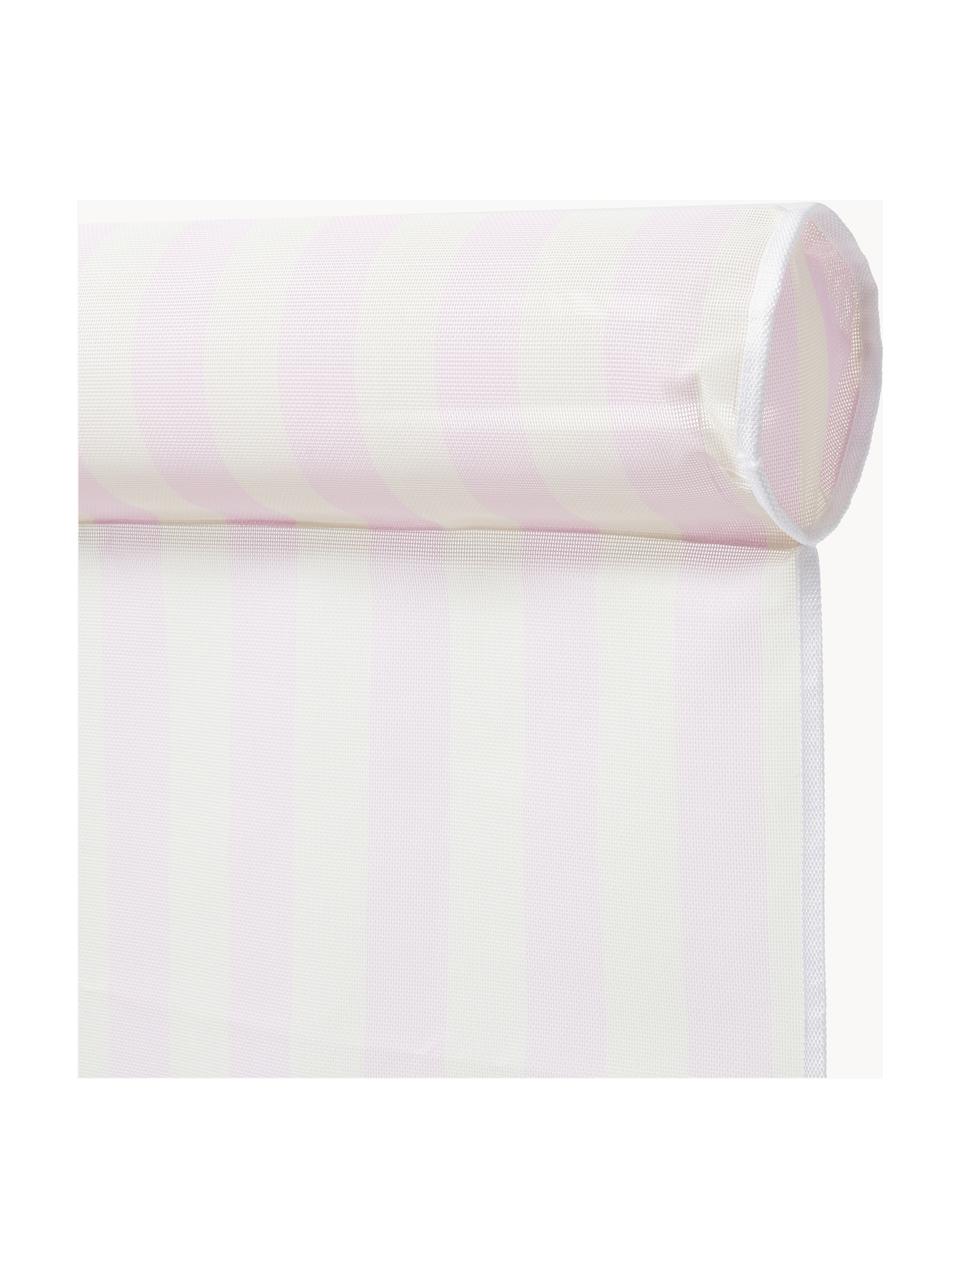 Tapis de natation Bubblegum, 60 % textile, 40 % plastique, Rose pâle, larg. 75 x long. 112 cm